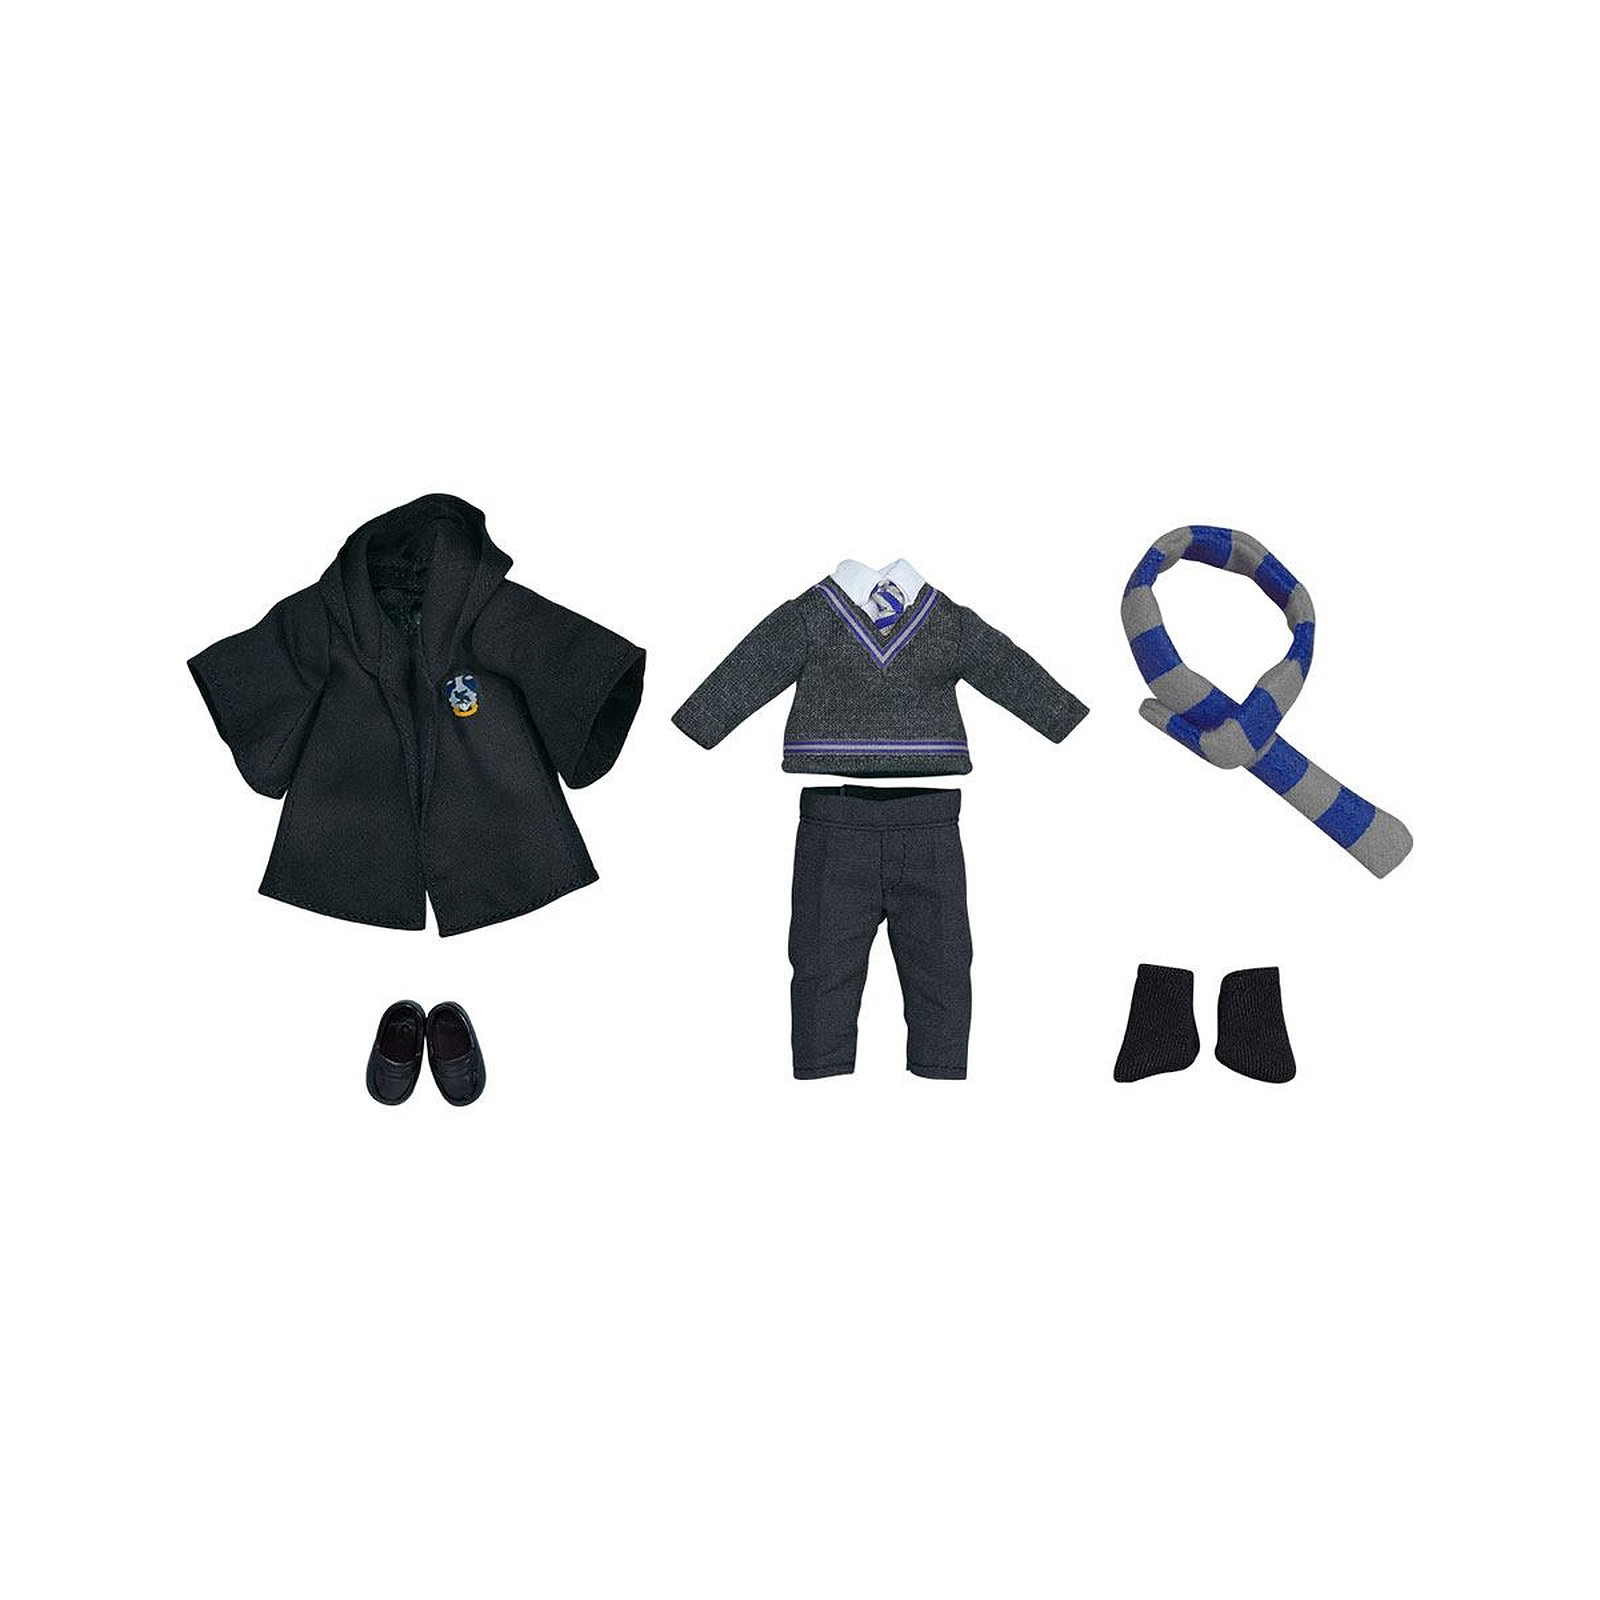 Harry Potter - Accessoires pour figurines Nendoroid Doll Outfit Set (Ravenclaw Uniform - Boy) - Figurines Good Smile Company